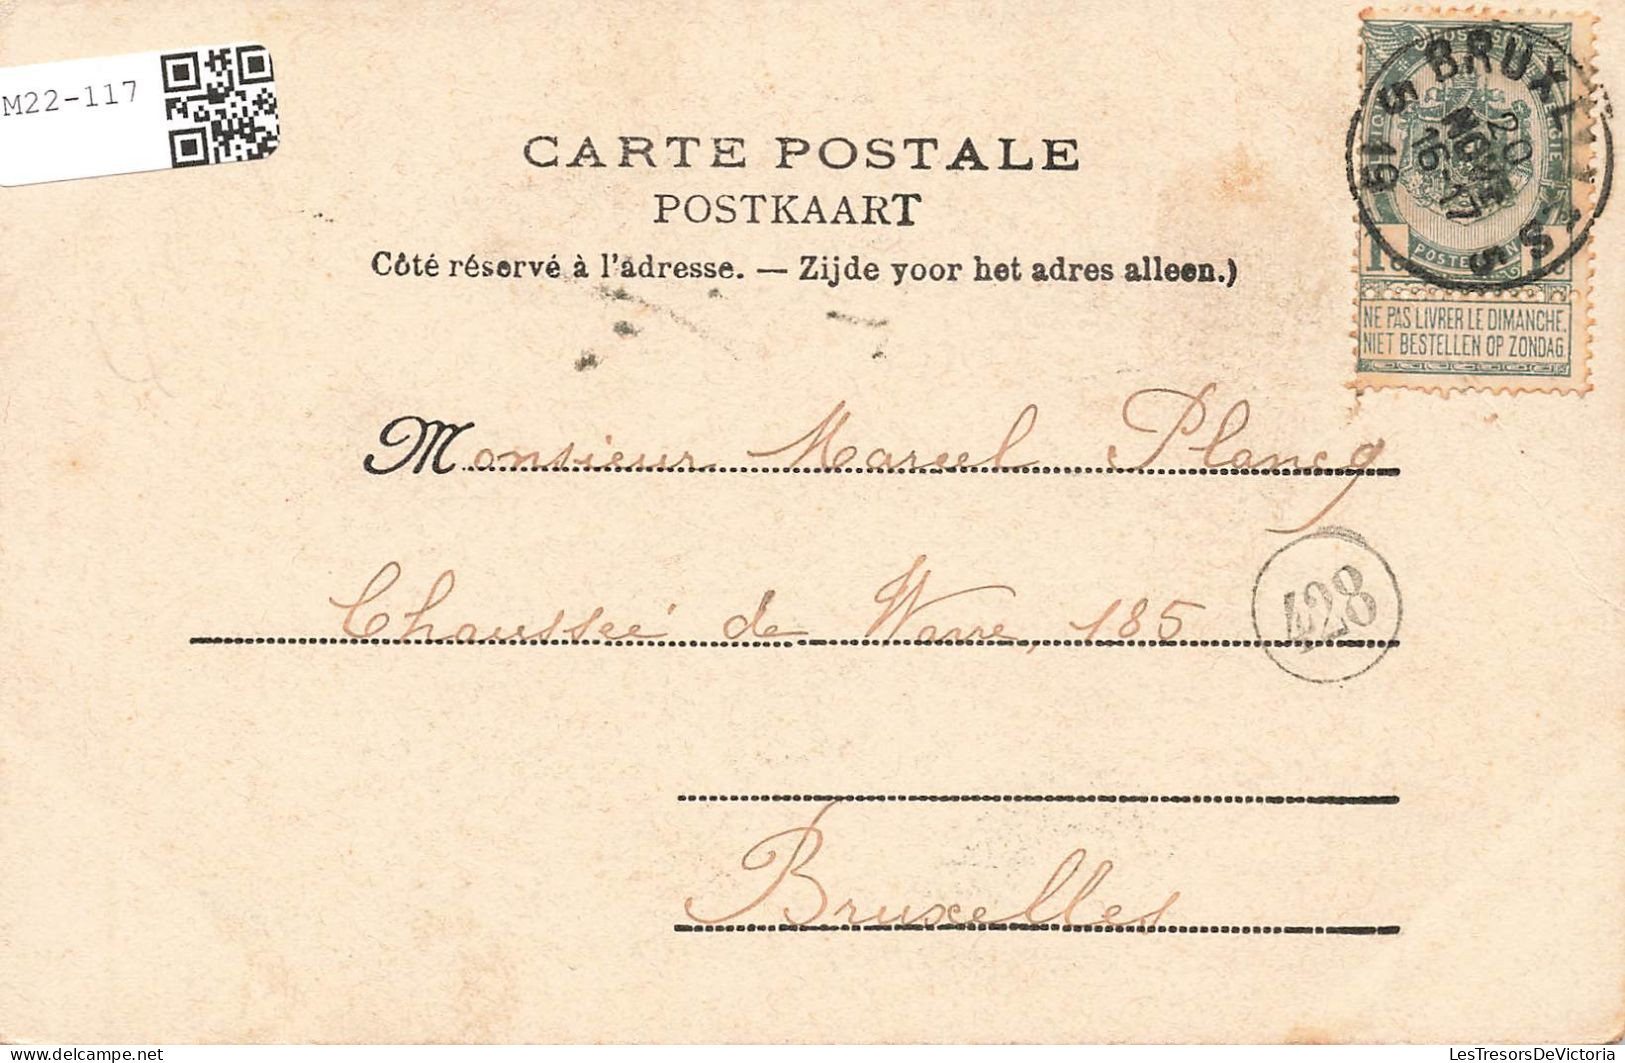 POLITIQUE - Evènements - Prestation Du Serment De Léopold Ier - Place Royale 21 Juillet 1831 - Carte Postale Ancienne - Events